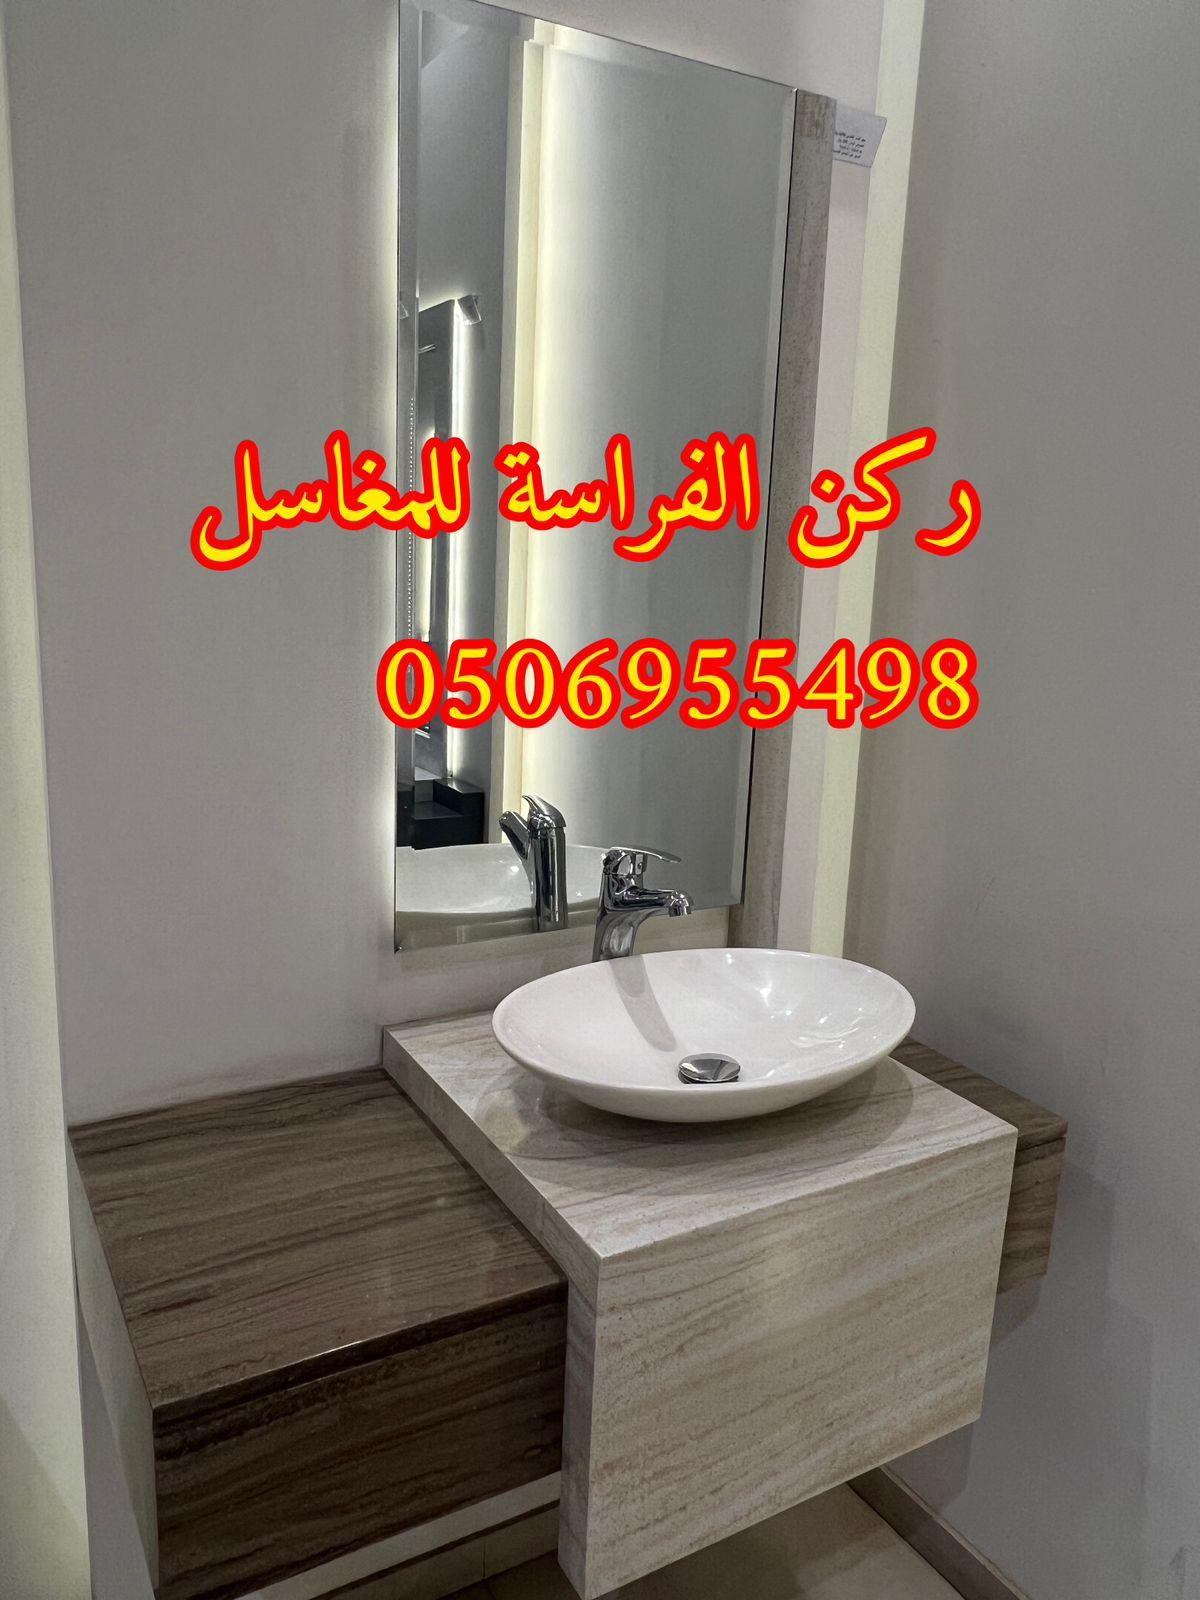 ديكورات مغاسل حمامات رخام في الرياض,0506955498 362396023